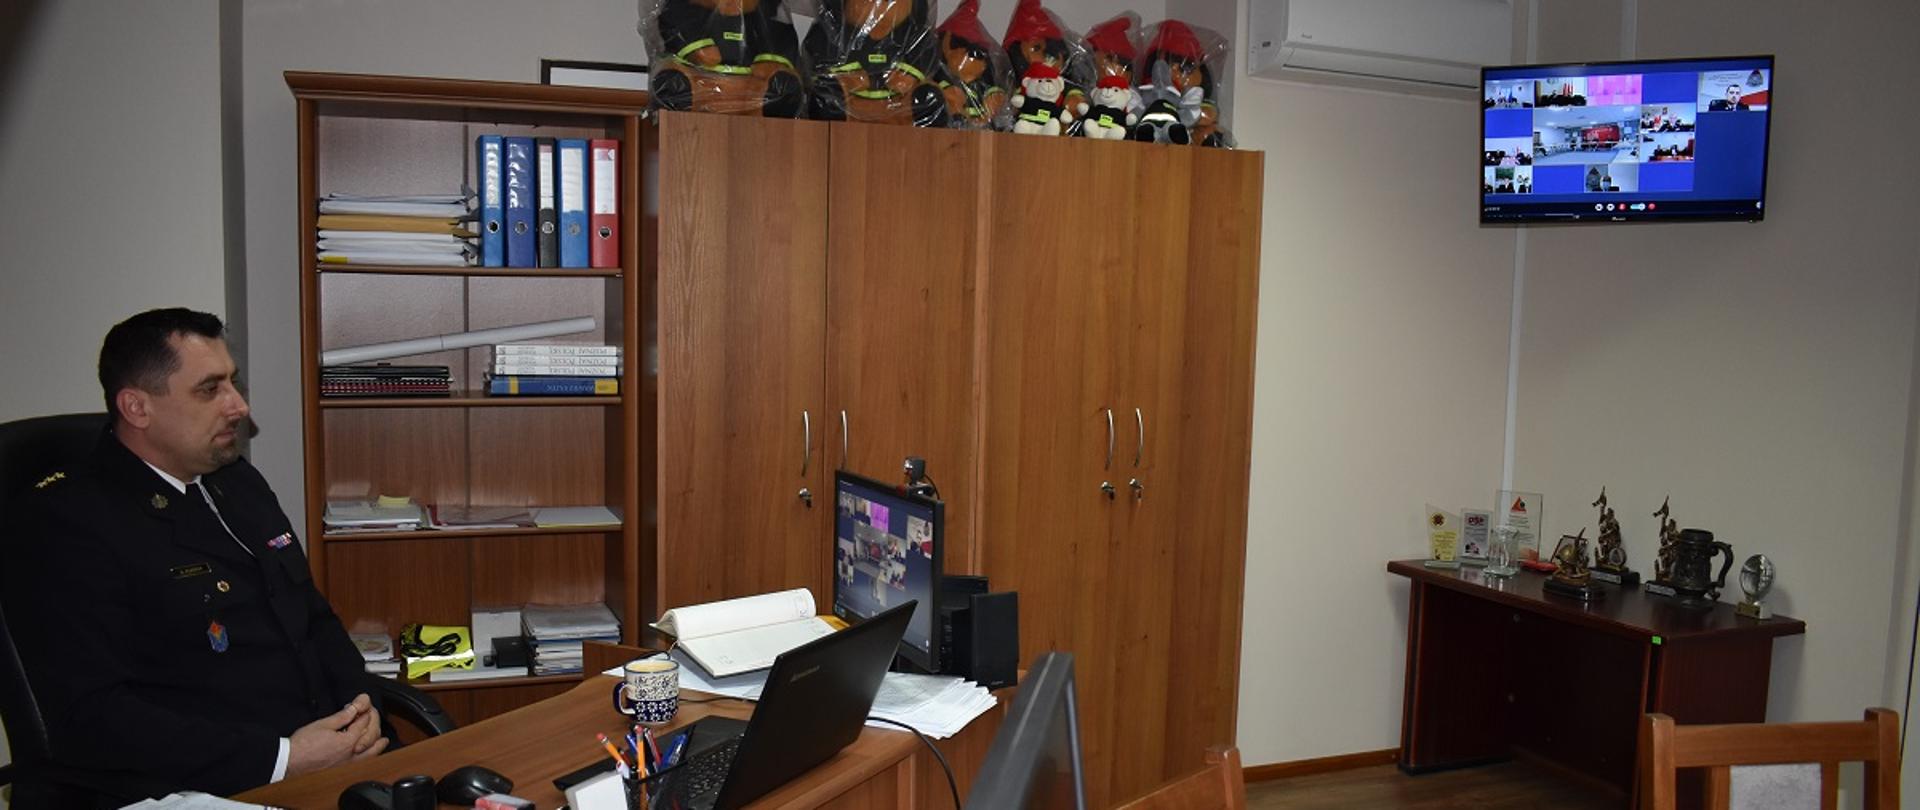 Zastępca Komendanta Powiatowego PSP siedzi za biurkiem. Na monitorze komputerowym znajdującym się na biurku oraz, w tle, telewizorze powieszonym na ścianie widać innych uczestników odprawy która odbywa się w formie wideokonferencji